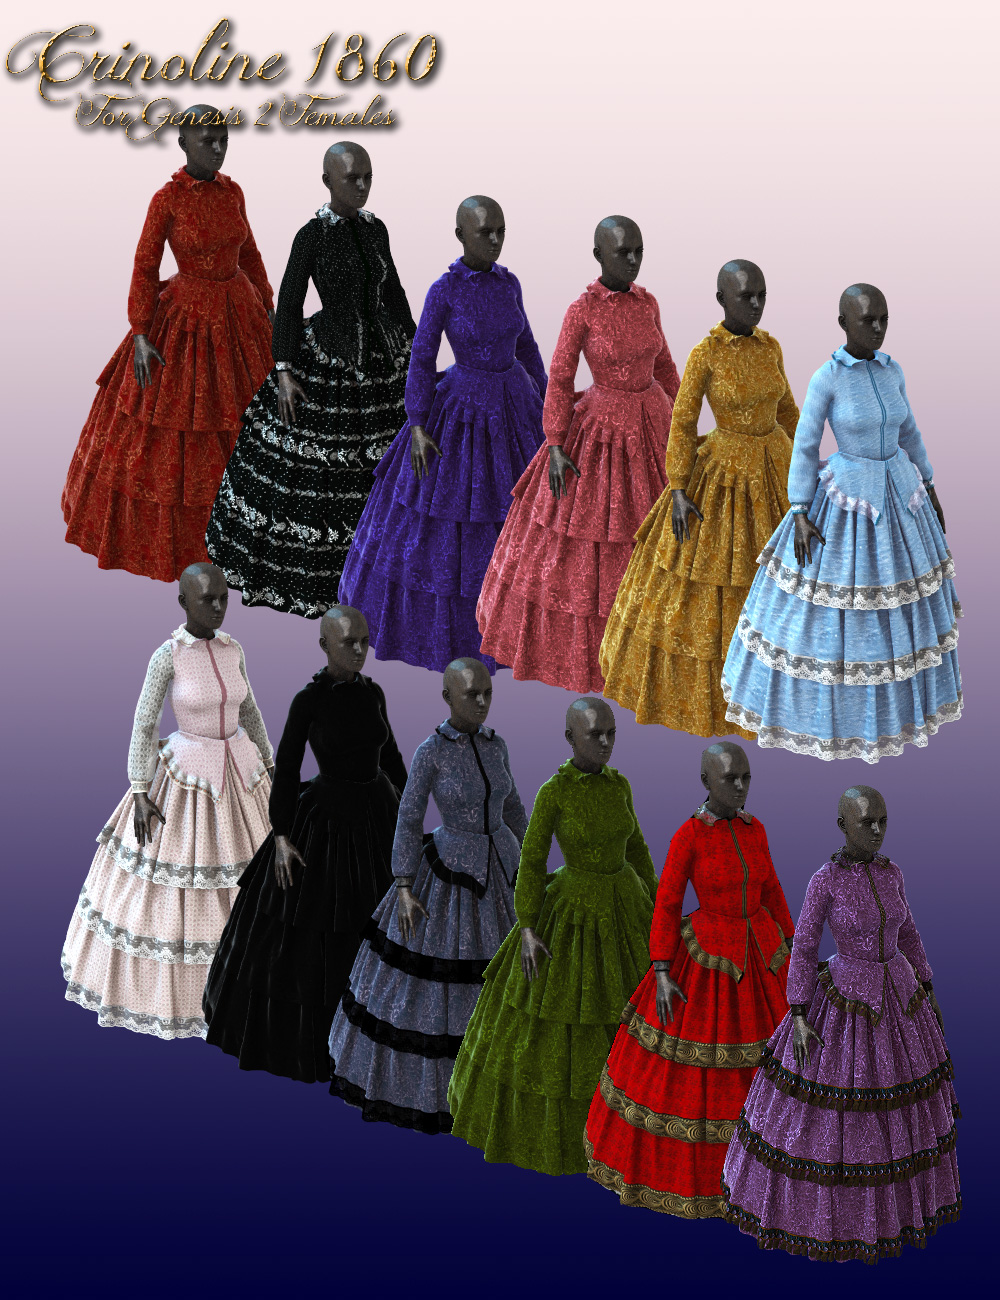 1860 Crinoline Dress for Genesis 2 Female(s) by: MartinJFrost, 3D Models by Daz 3D